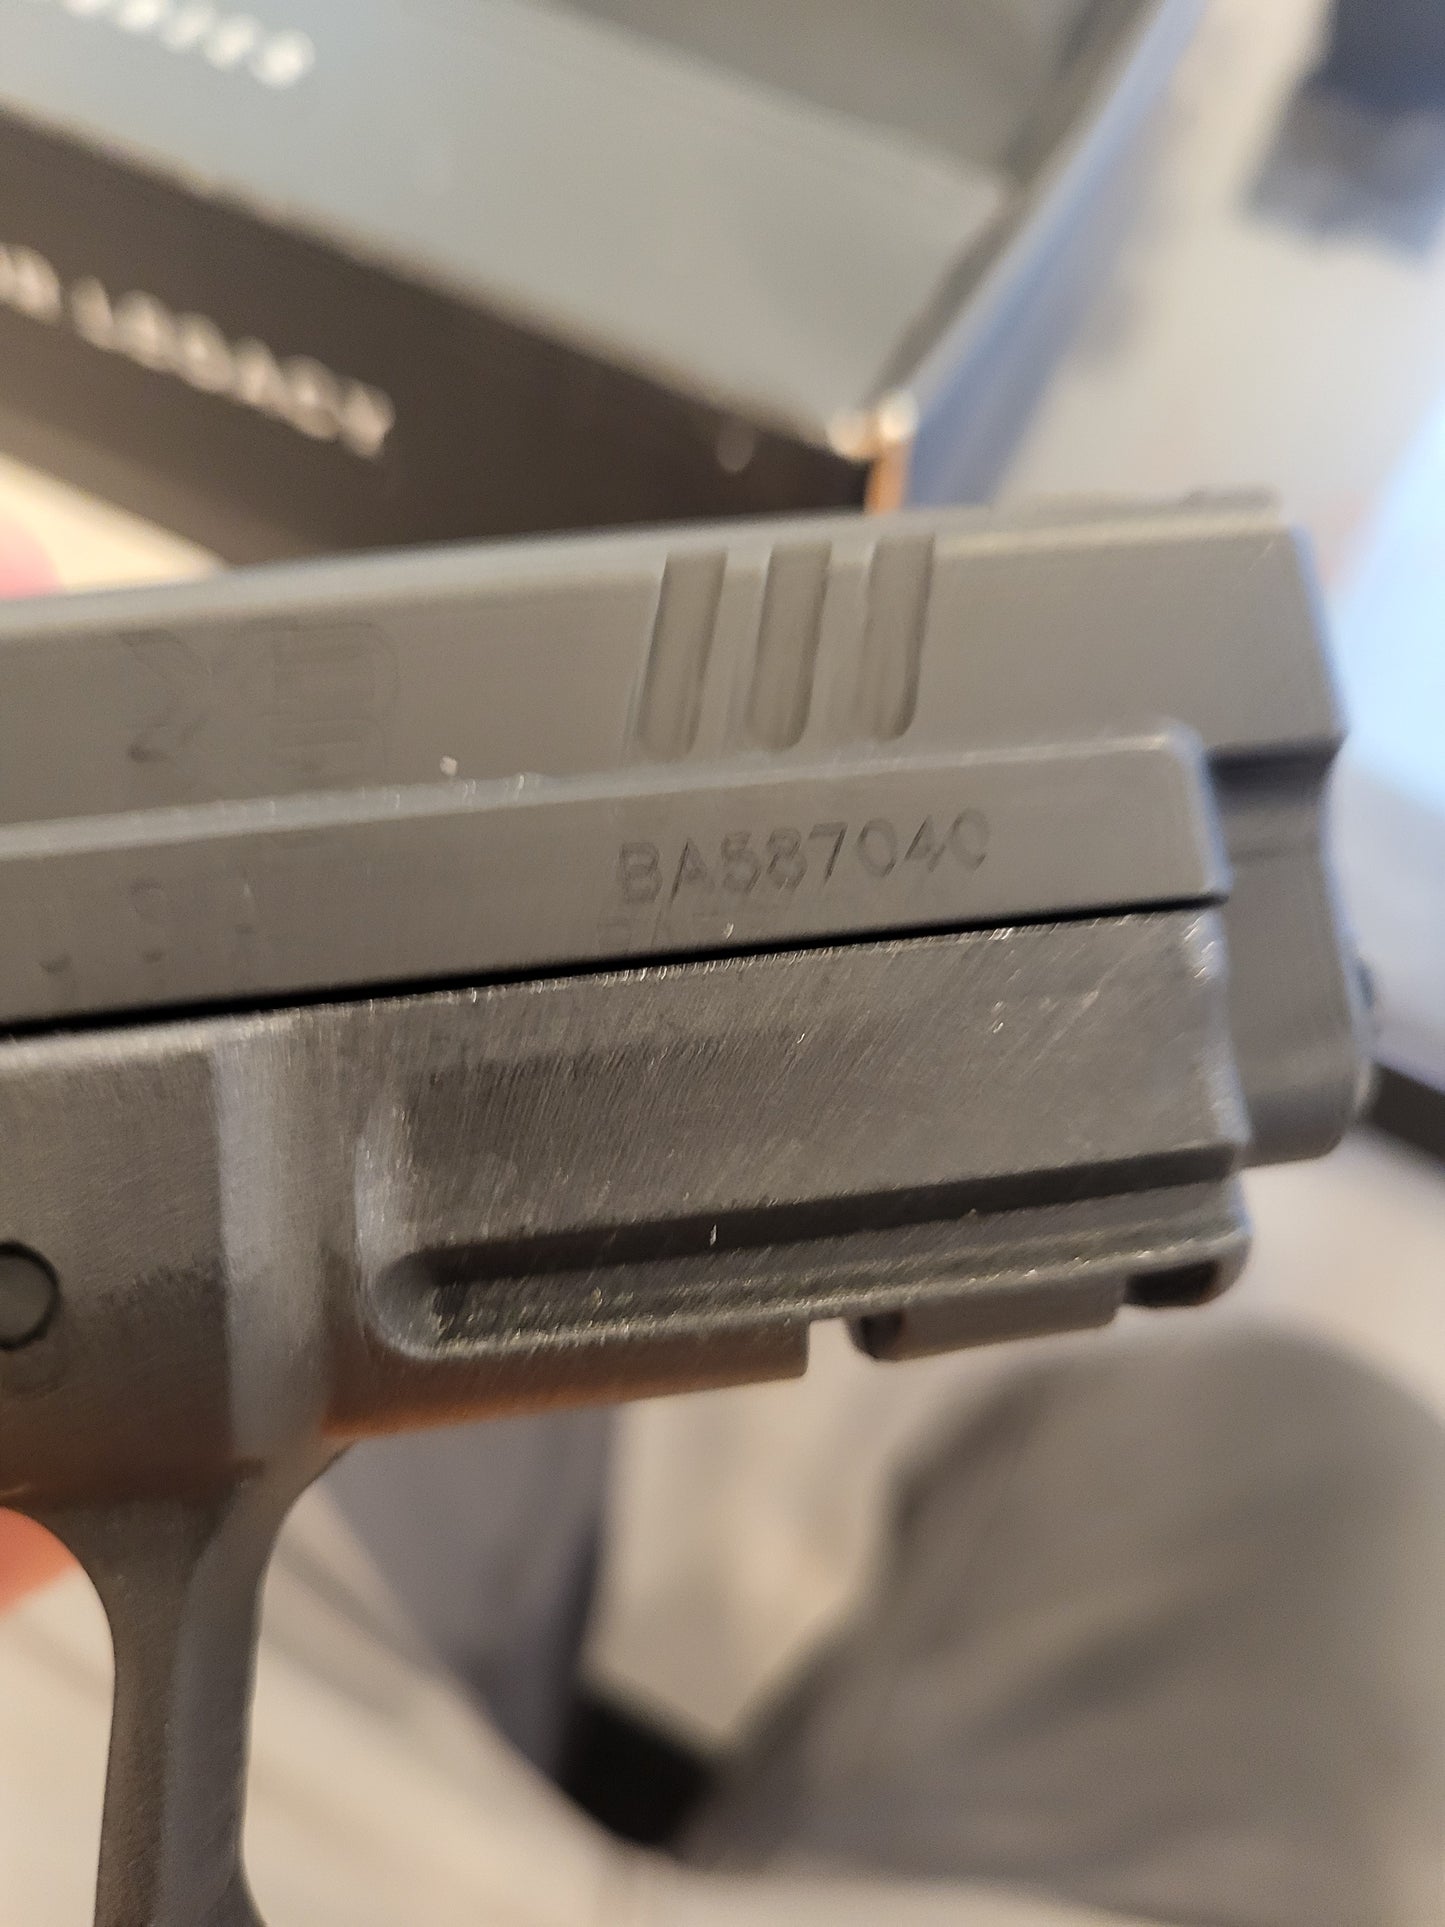 Springfield Armory XDM 9mm Pistol w 3x16 round magazine no card fee